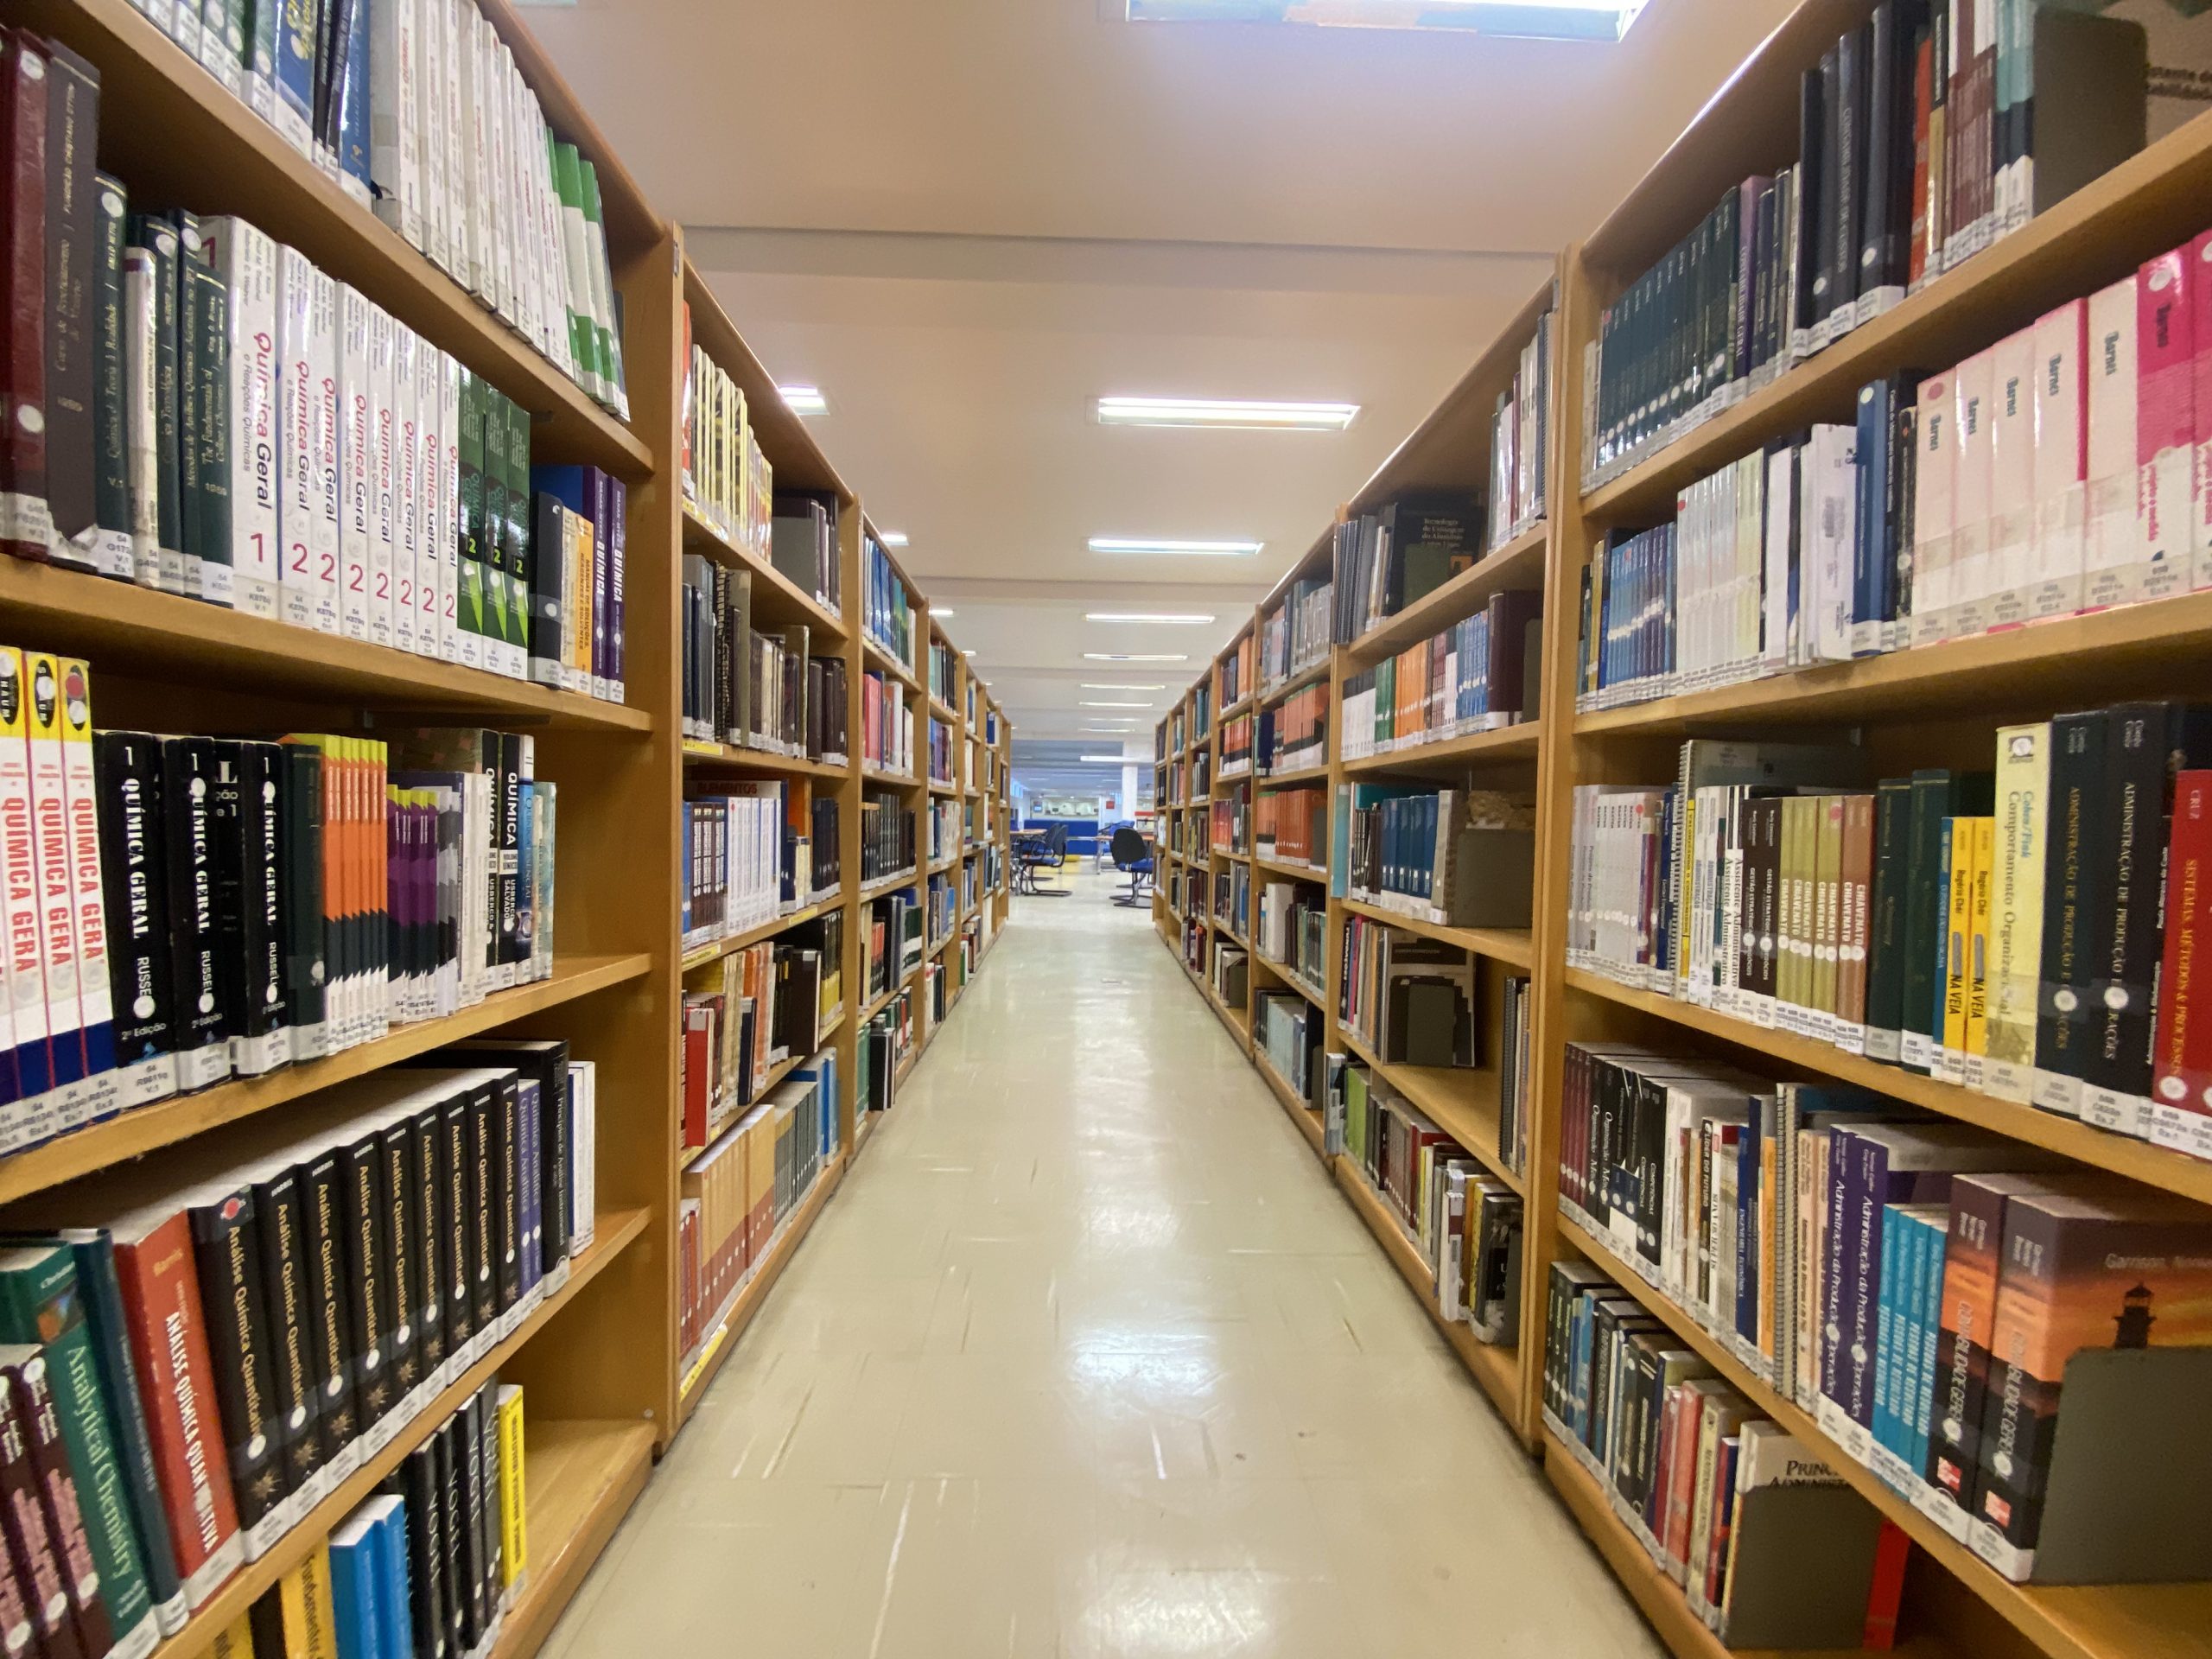 Em Sergipe, existem várias bibliotecas que você pode visitar. Aqui estão algumas delas: